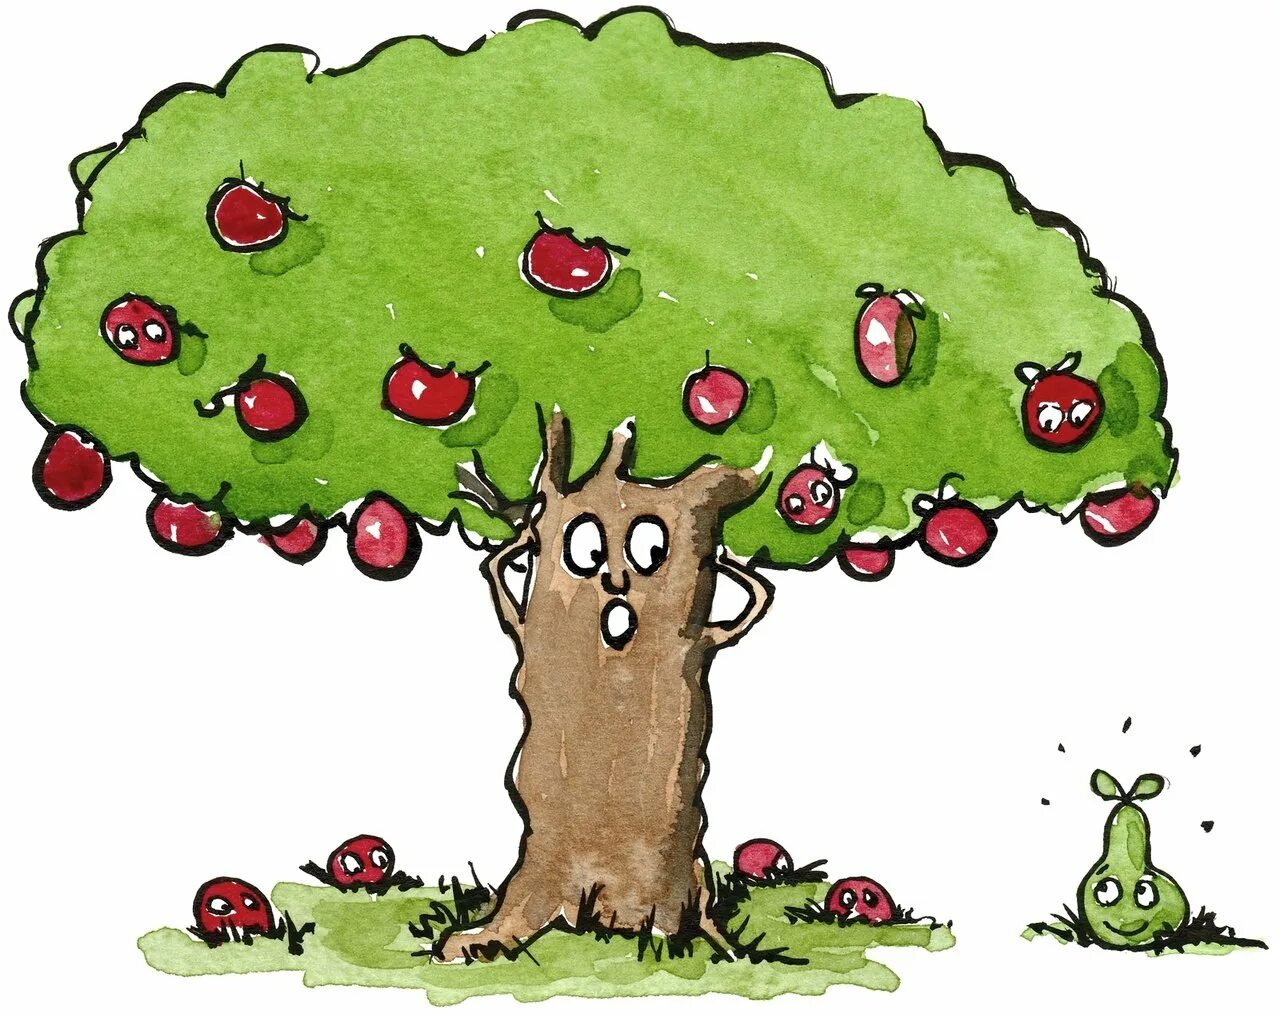 Пословица яблоня от яблони недалеко падает. Яблоко от яблони. Яблоня рисунок. Яблоко от яблони недалеко падает. Яблоки на дереве.